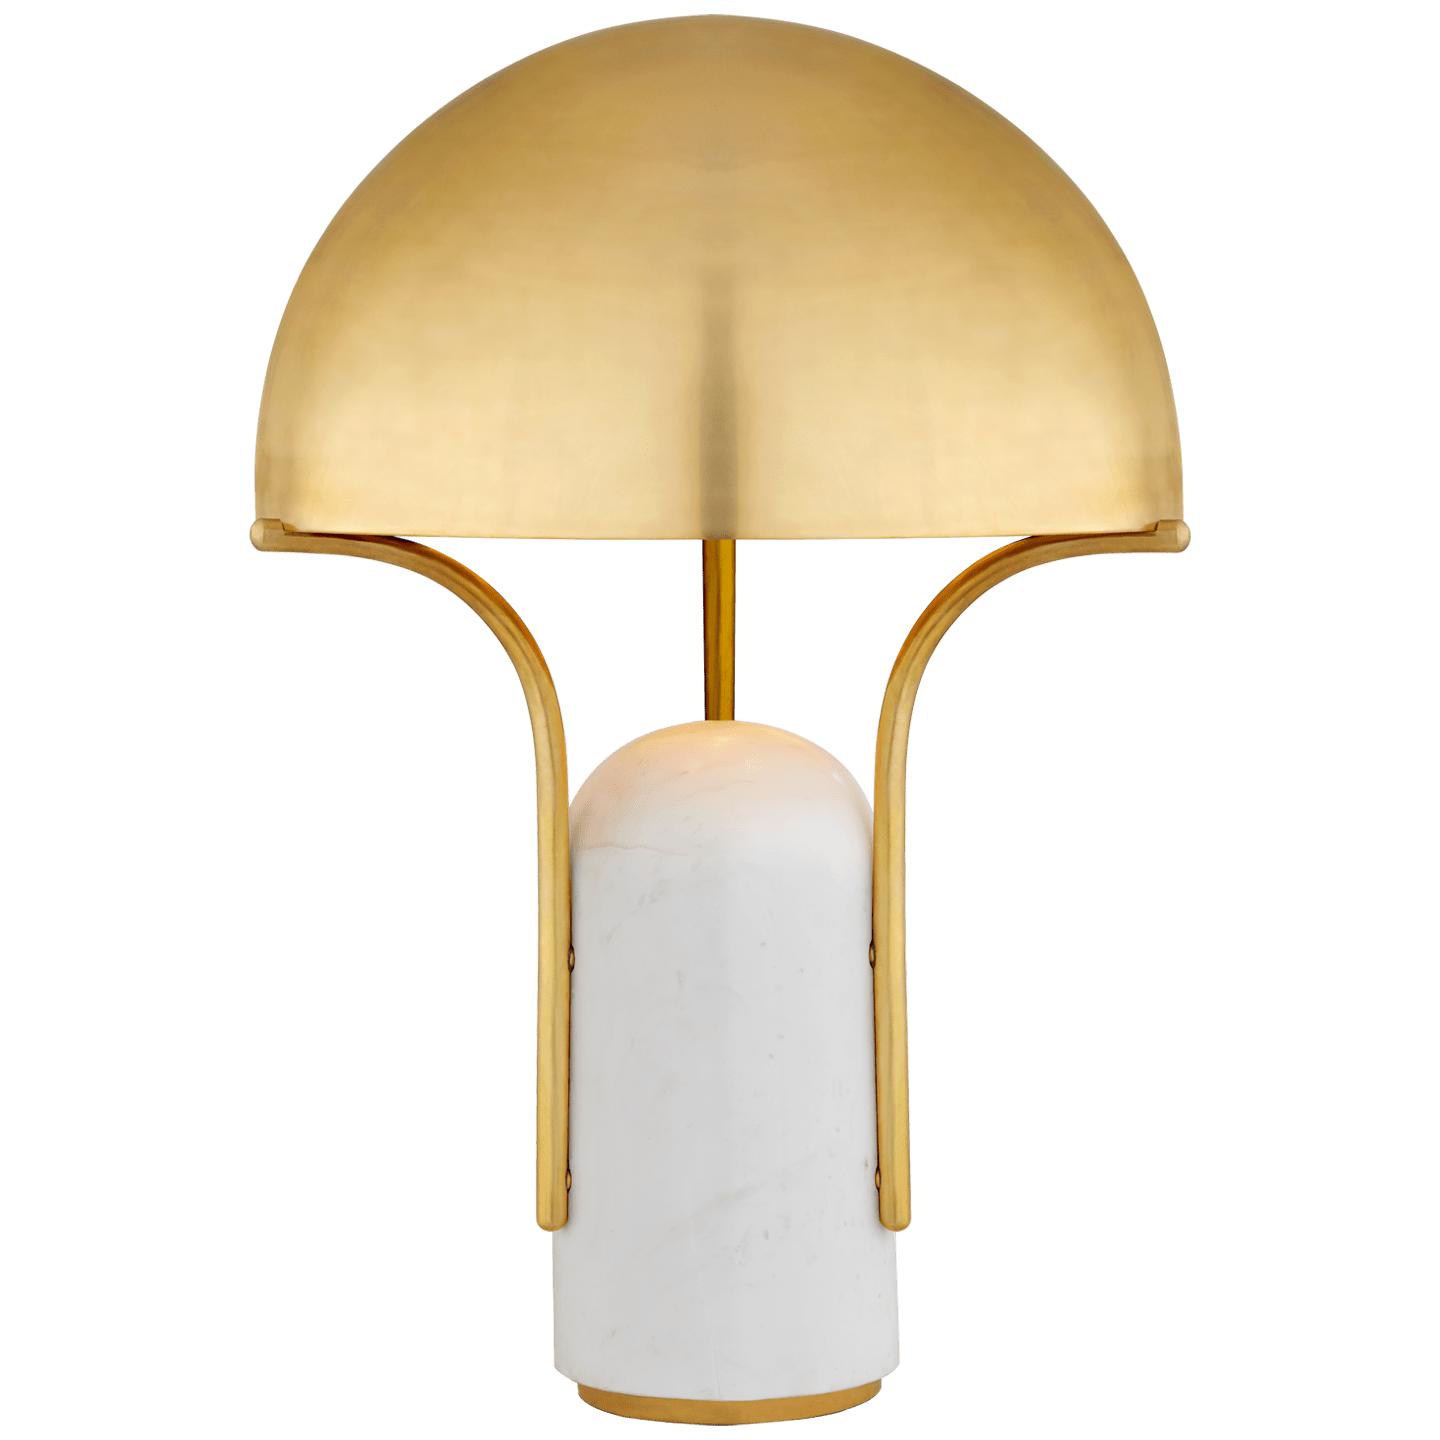 Купить Настольная лампа Affinity Medium Dome Table Lamp в интернет-магазине roooms.ru